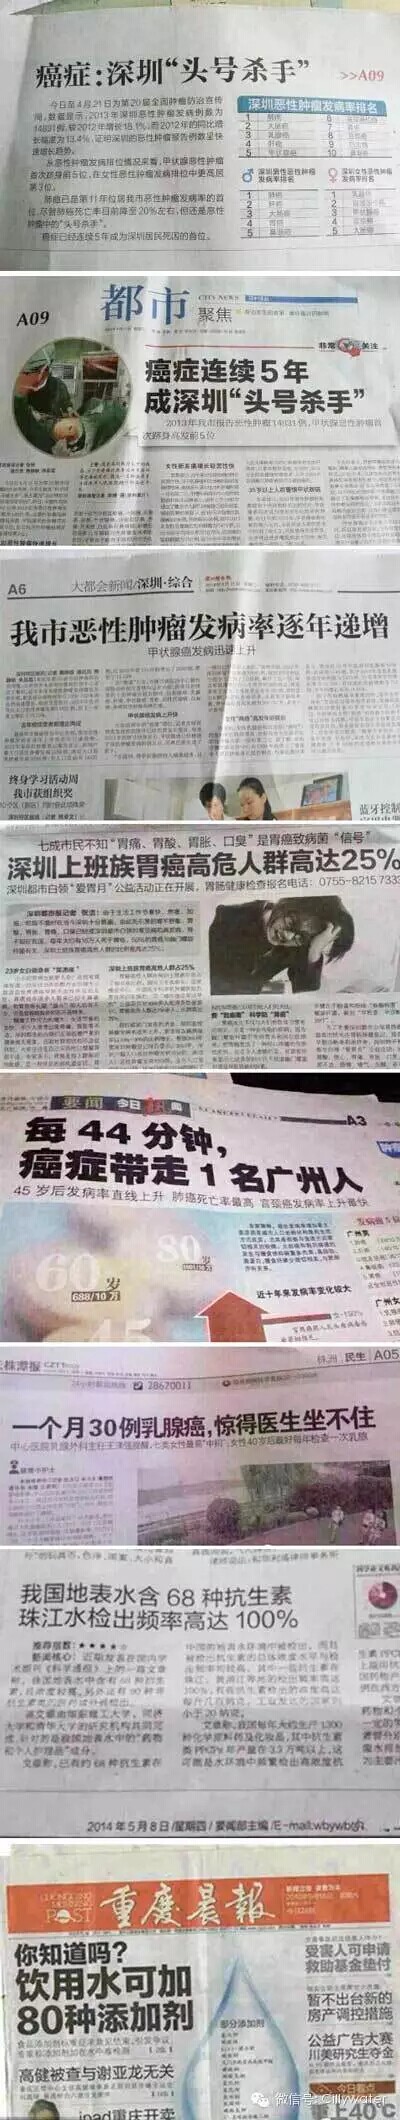 水丽净水新闻 新闻：中国患癌和癌症将变成一种常态（图）_1